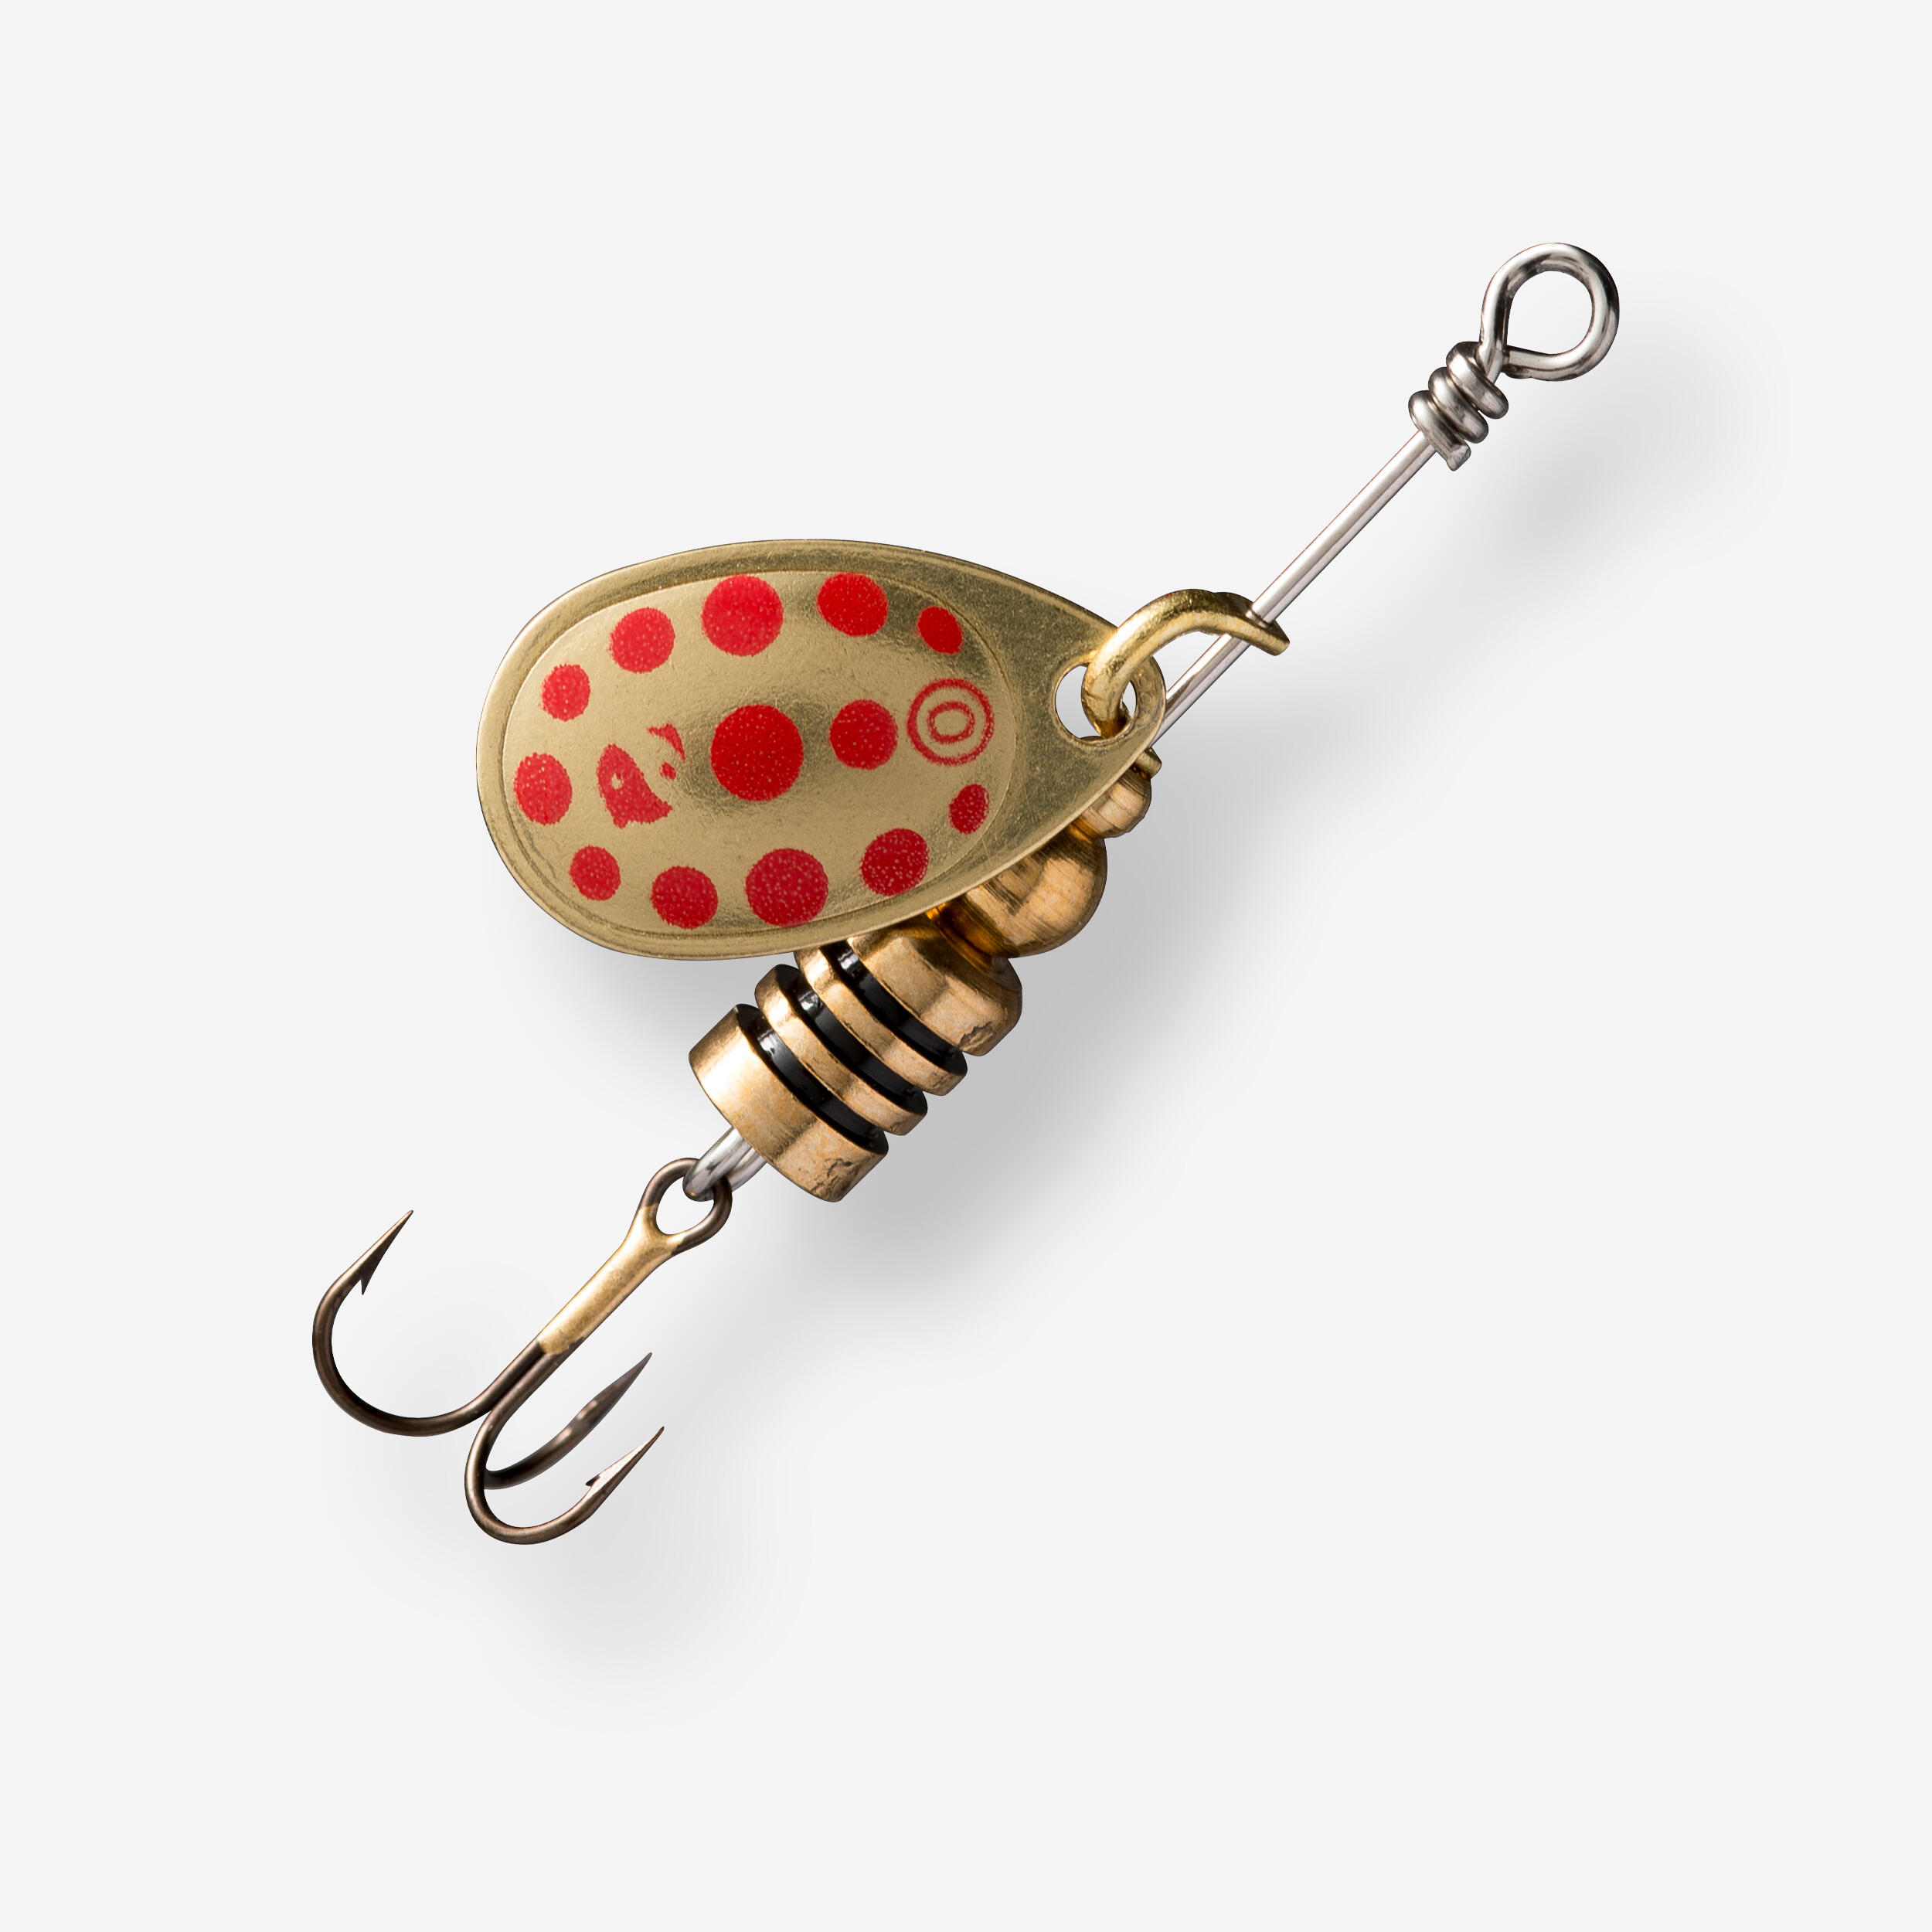 Linguriță Rotativă Pescuit la Răpitor Weta + #0 Auriu/ Puncte Roșii auriu  Naluci Metalice